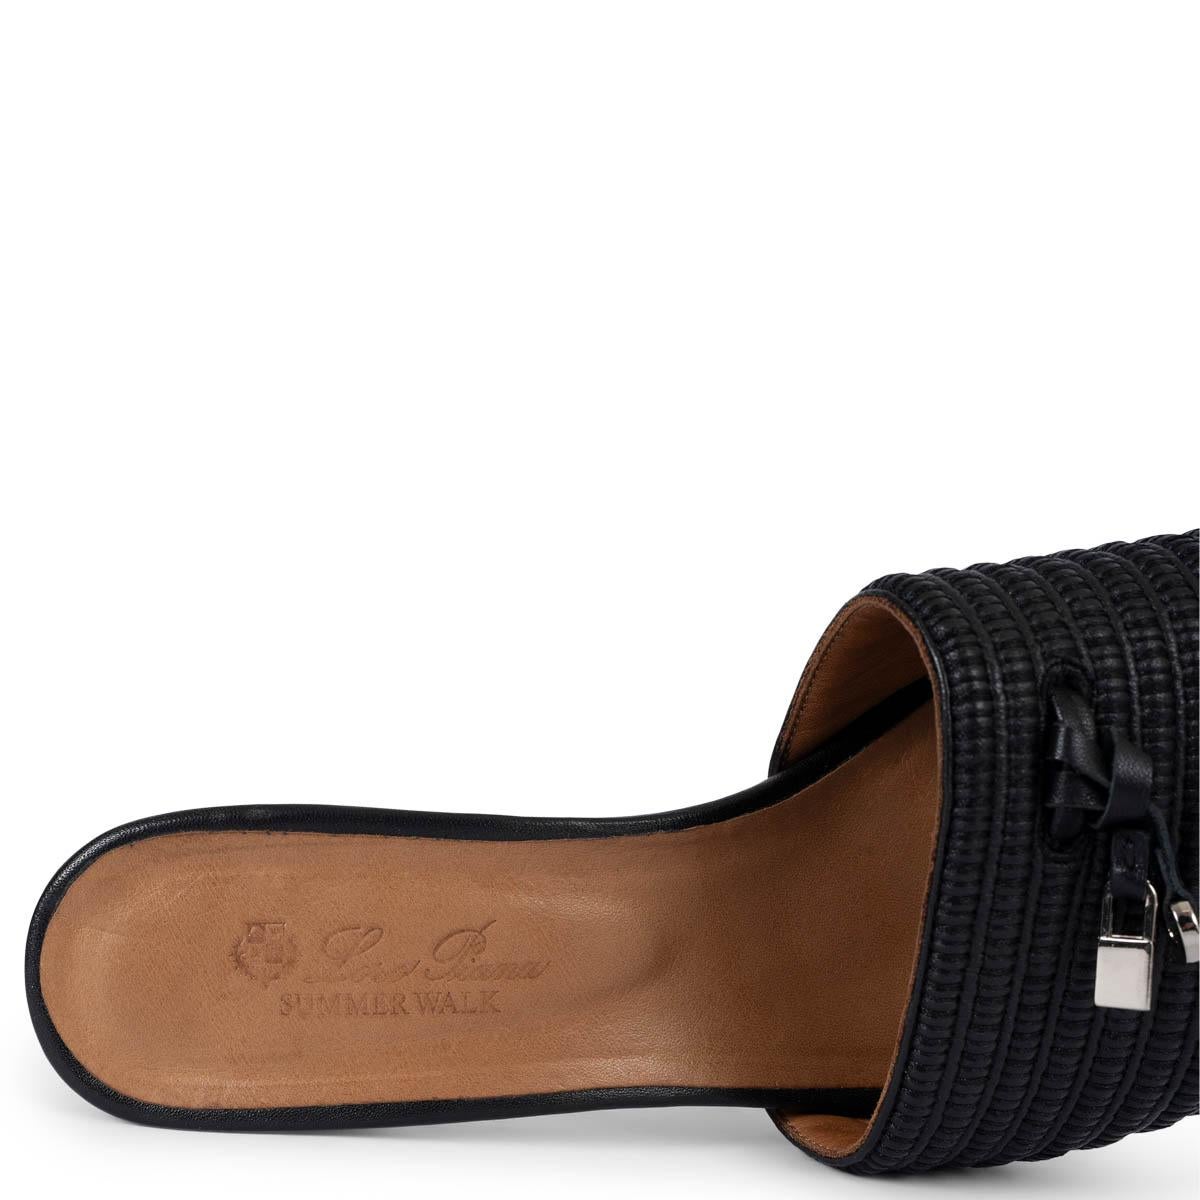 LORO PIANA cuir noir et raphia SUMMER WALK Mule Sandales Chaussures 41 fit 40 en vente 3